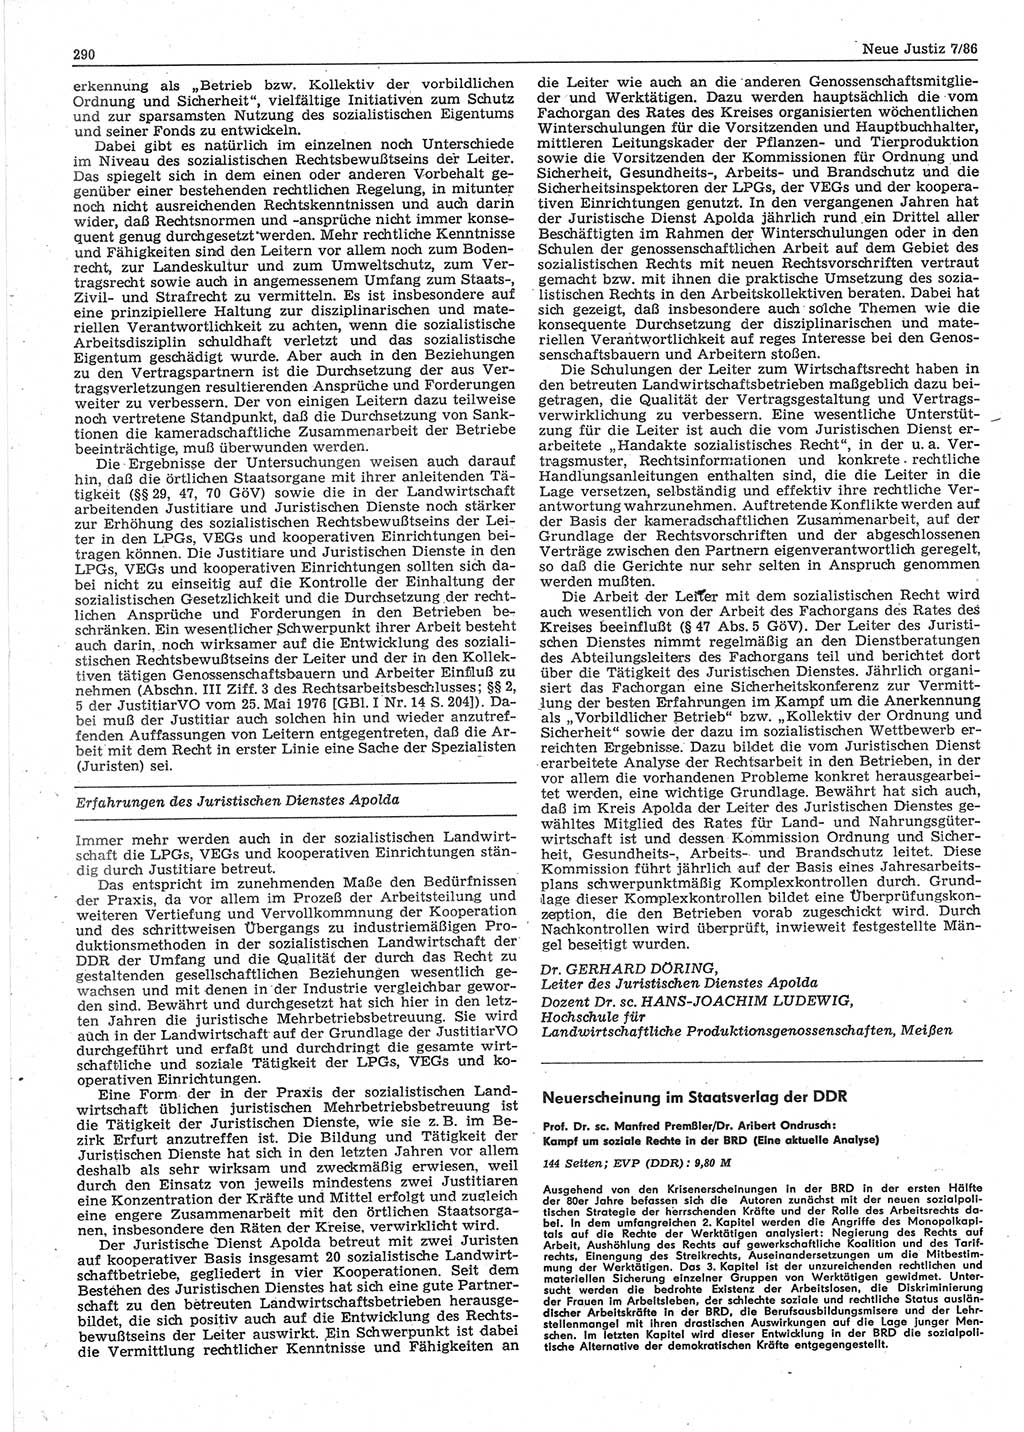 Neue Justiz (NJ), Zeitschrift für sozialistisches Recht und Gesetzlichkeit [Deutsche Demokratische Republik (DDR)], 40. Jahrgang 1986, Seite 290 (NJ DDR 1986, S. 290)